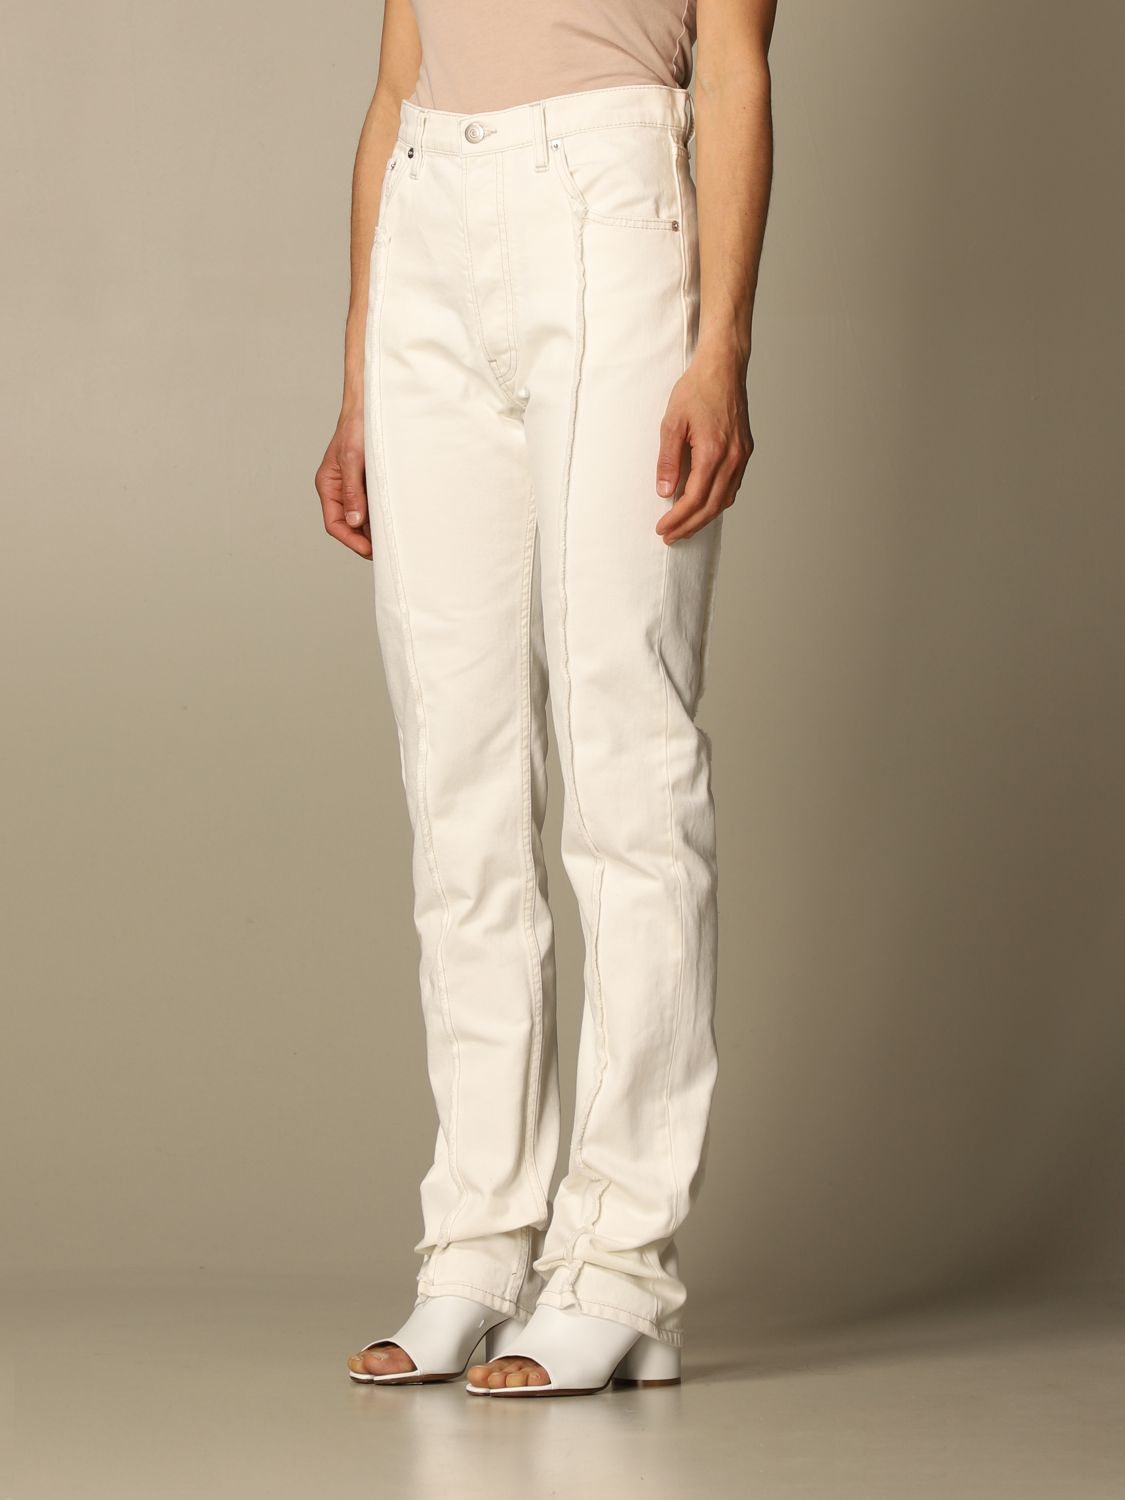 MAISON MARGIELA: jeans for woman - White | Maison Margiela jeans 